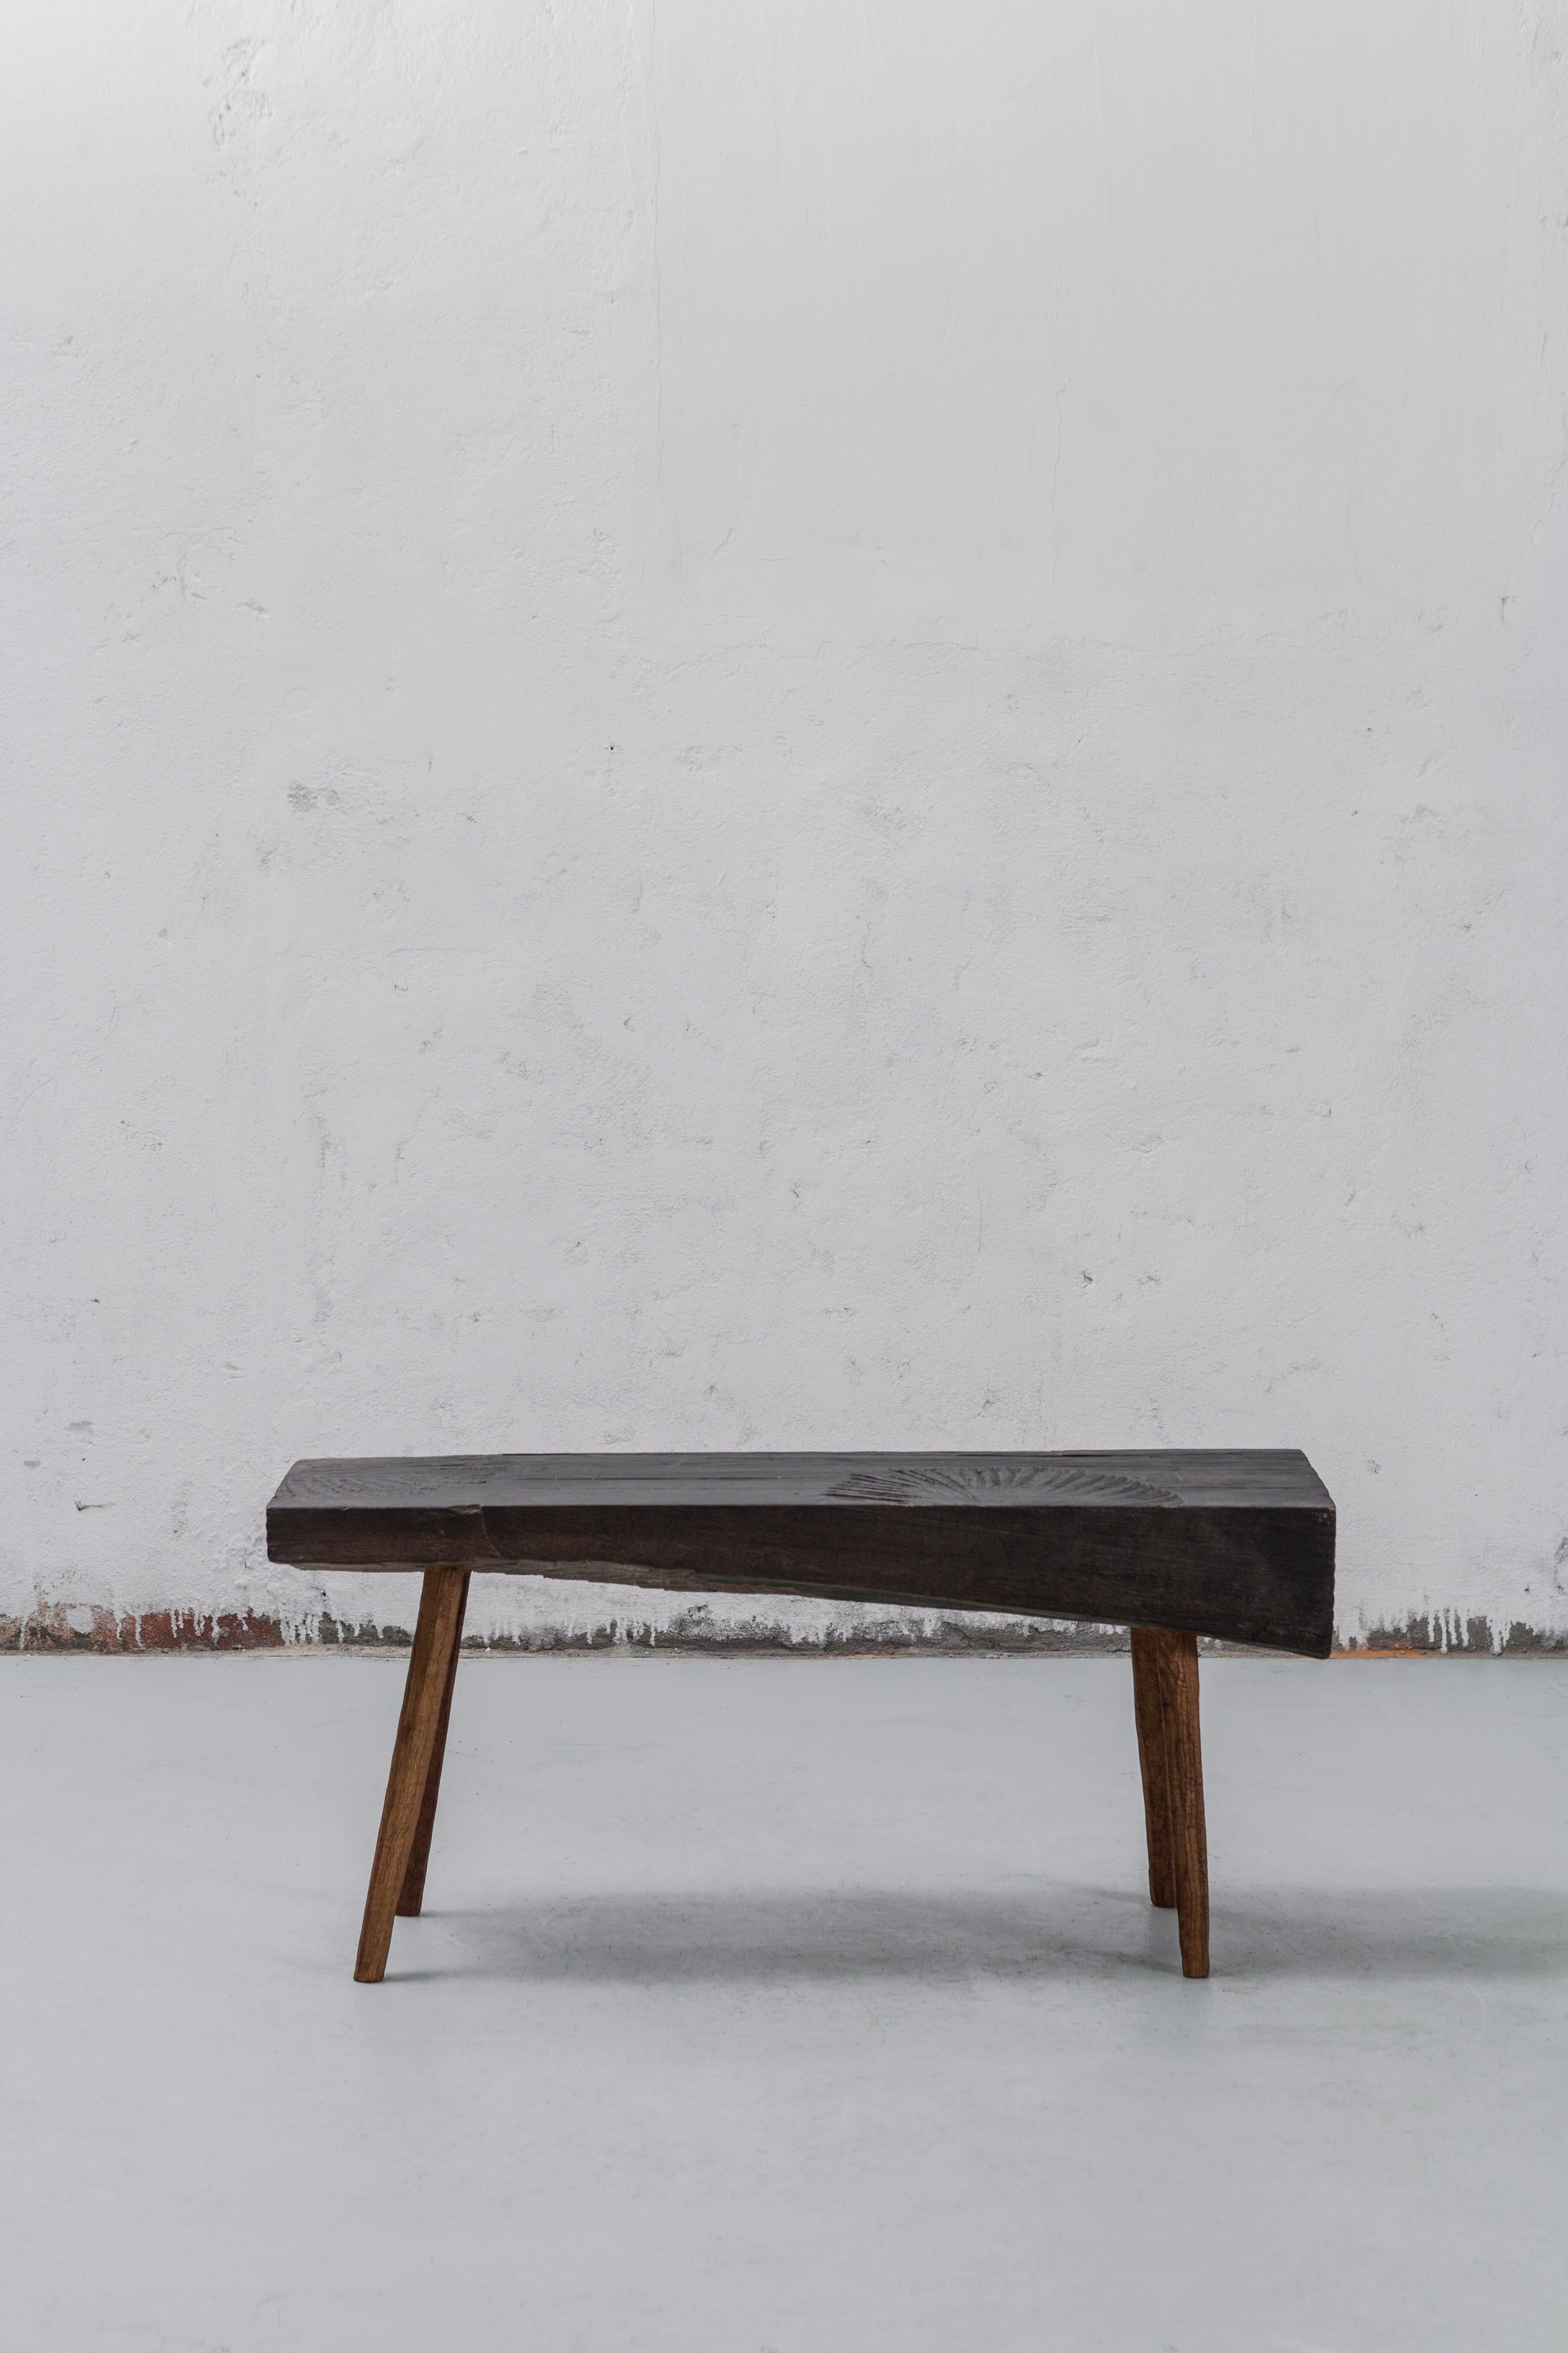 Kleiner Tisch aus massiver Eiche (+ Leinöl)
Maße: 50 x 112 x 45 cm.

Das Sóha Design Studio entwirft und produziert Möbel und Dekorationsobjekte aus massiver Eiche in einem authentischen Stil. Die Inspiration für all diese Gegenstände kommt von der